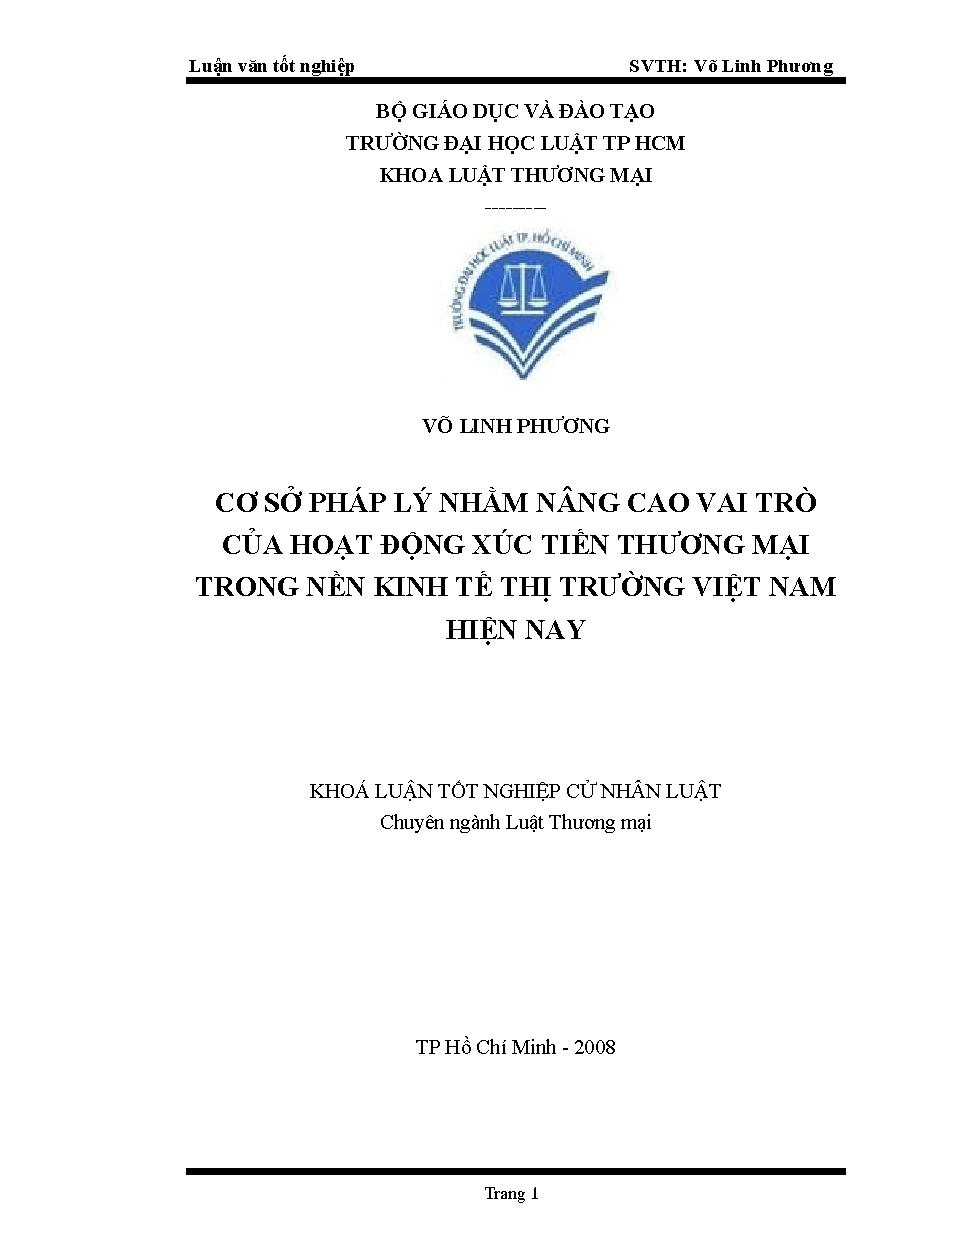 Cơ sở pháp lý nhằm nâng cao vai trò của hoạt động xúc tiến thương mại trong nền kinh tế thị trường Việt Nam hiện nay